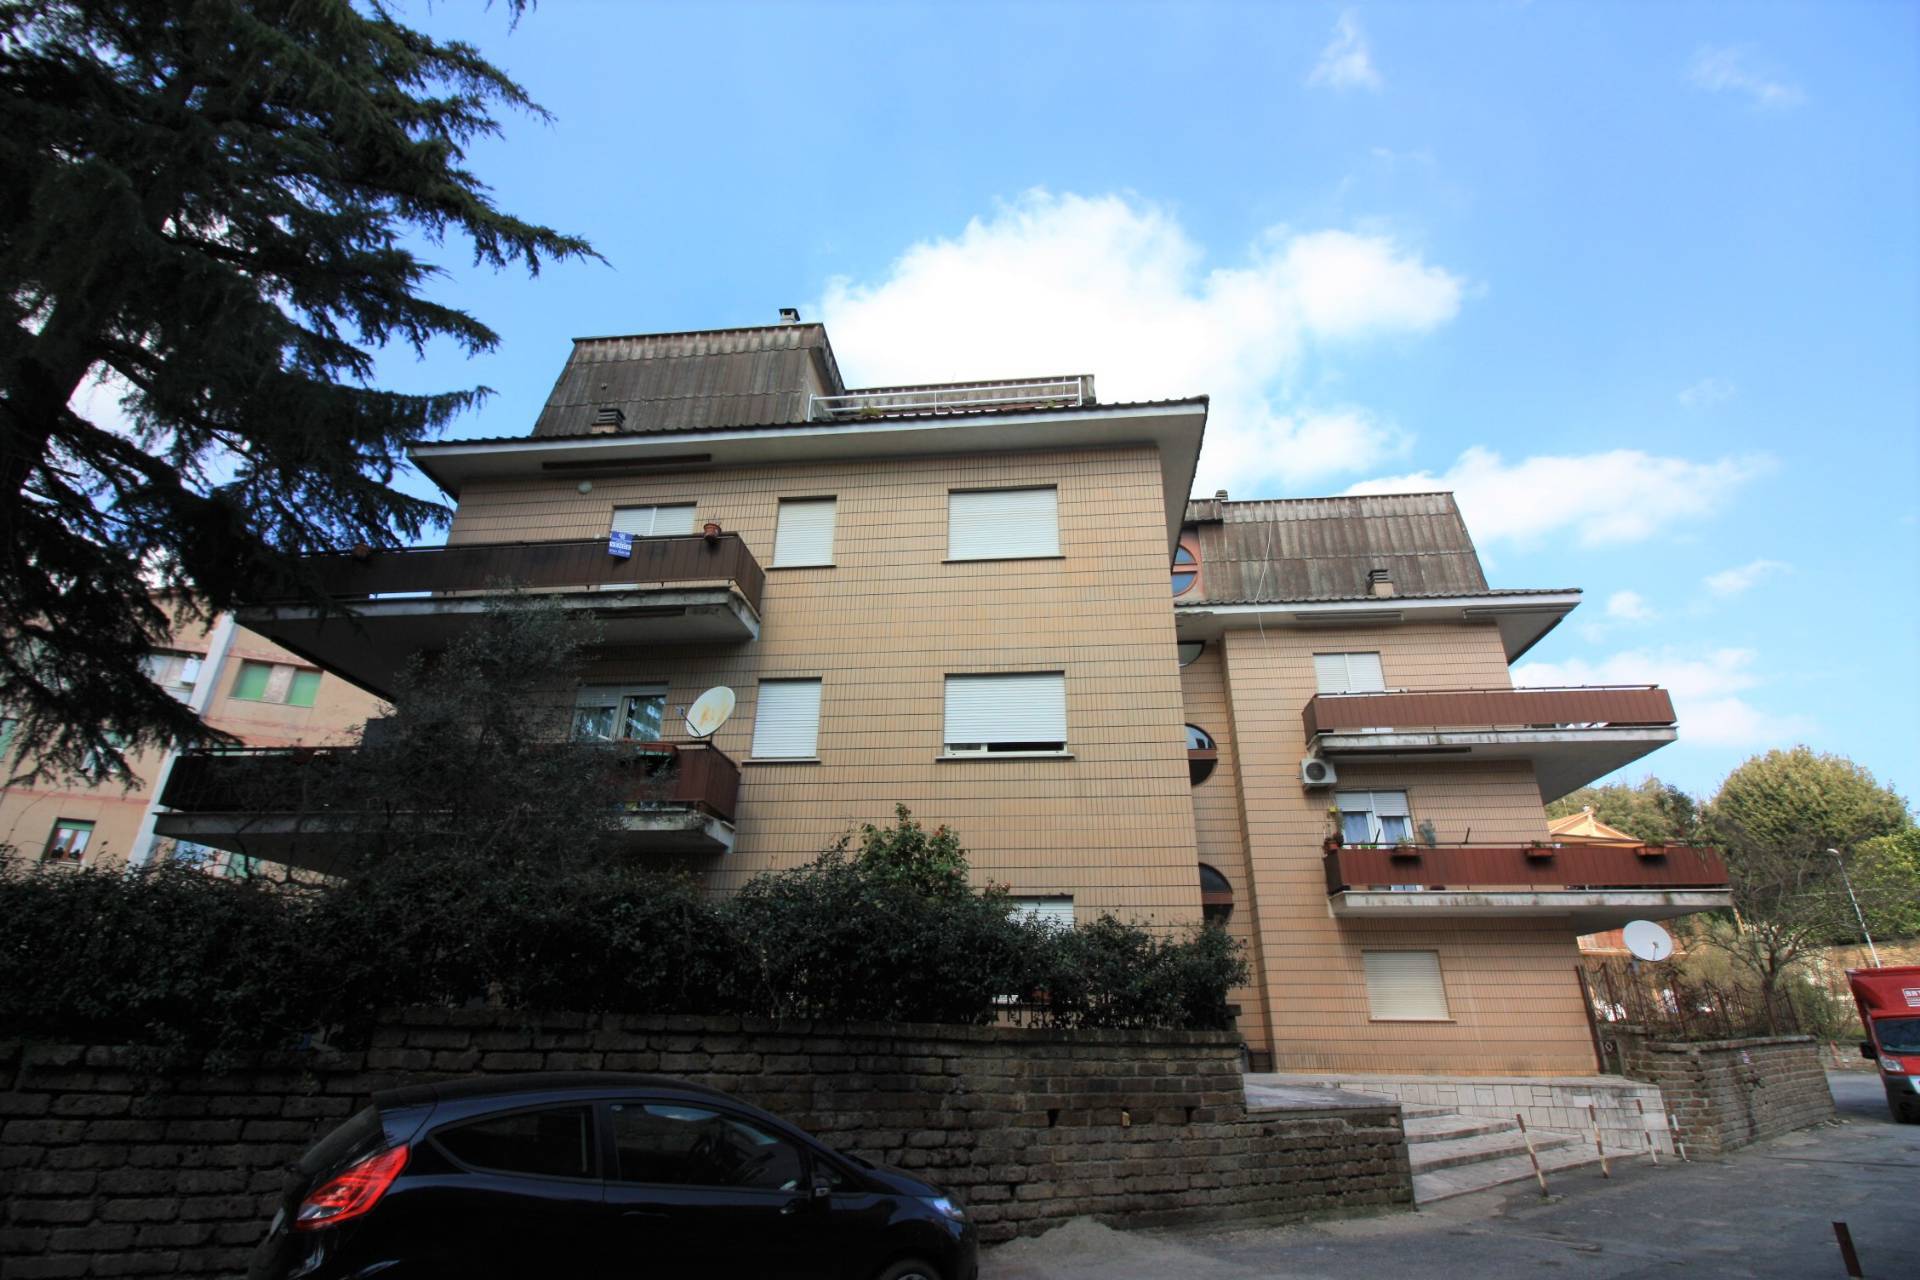 Appartamento in vendita a Ronciglione, 5 locali, zona Località: semi-centrale, prezzo € 69.000 | CambioCasa.it